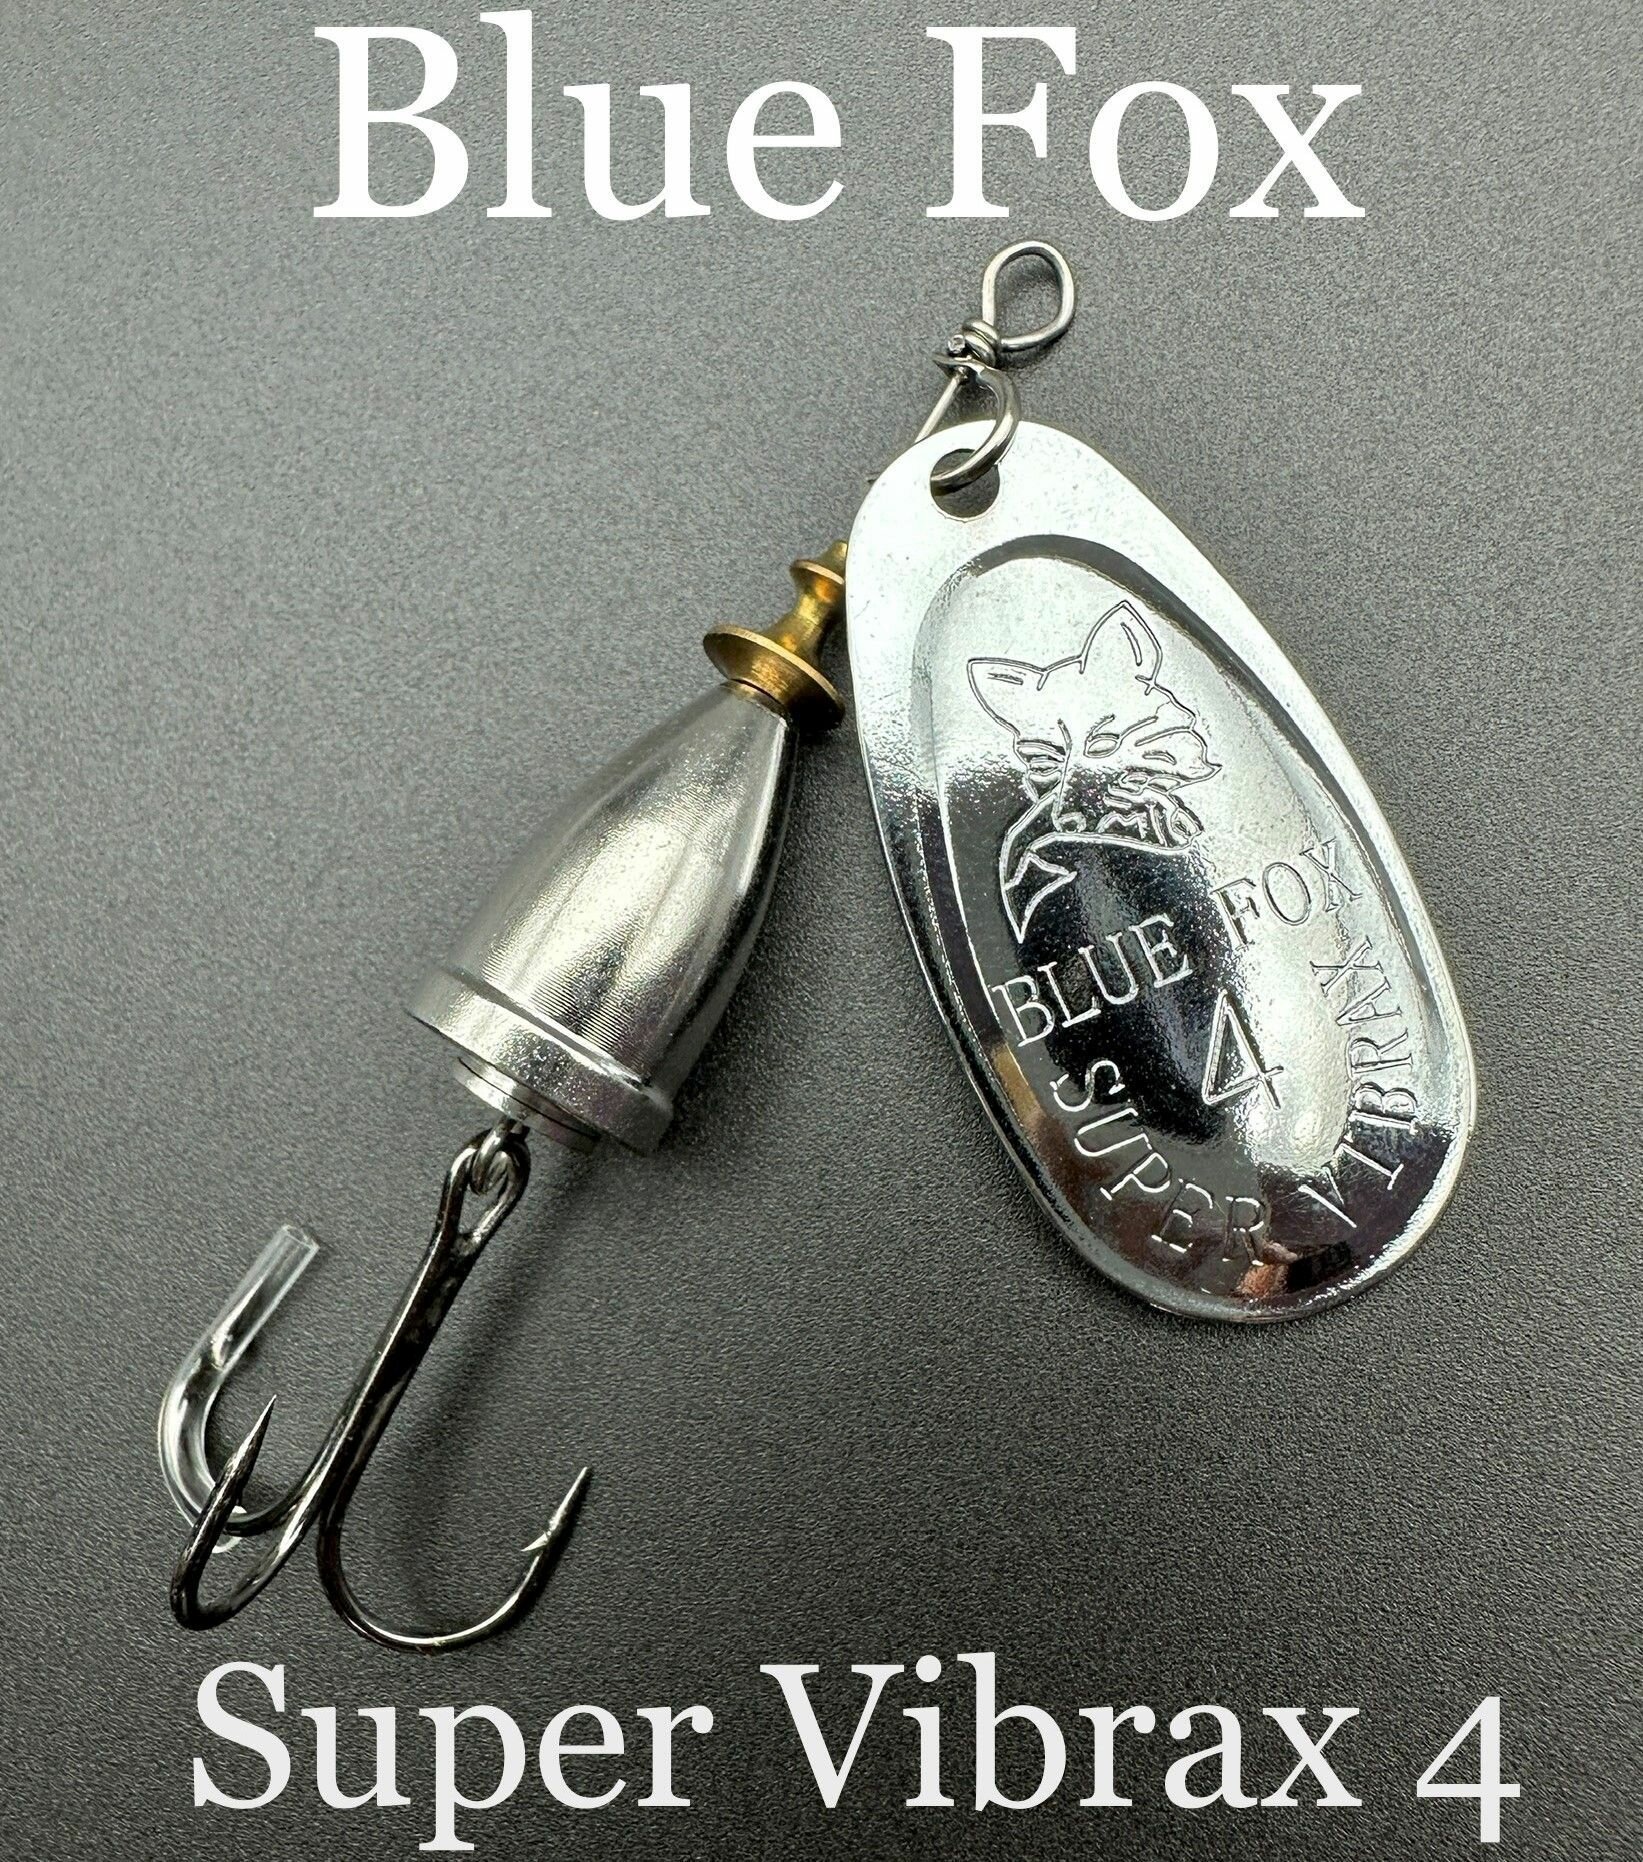 Набор из 5 вертушек Blue Fox Super Vibrax 4 серебро для рыбалки на окунь, щуку, голавль, берш, судак